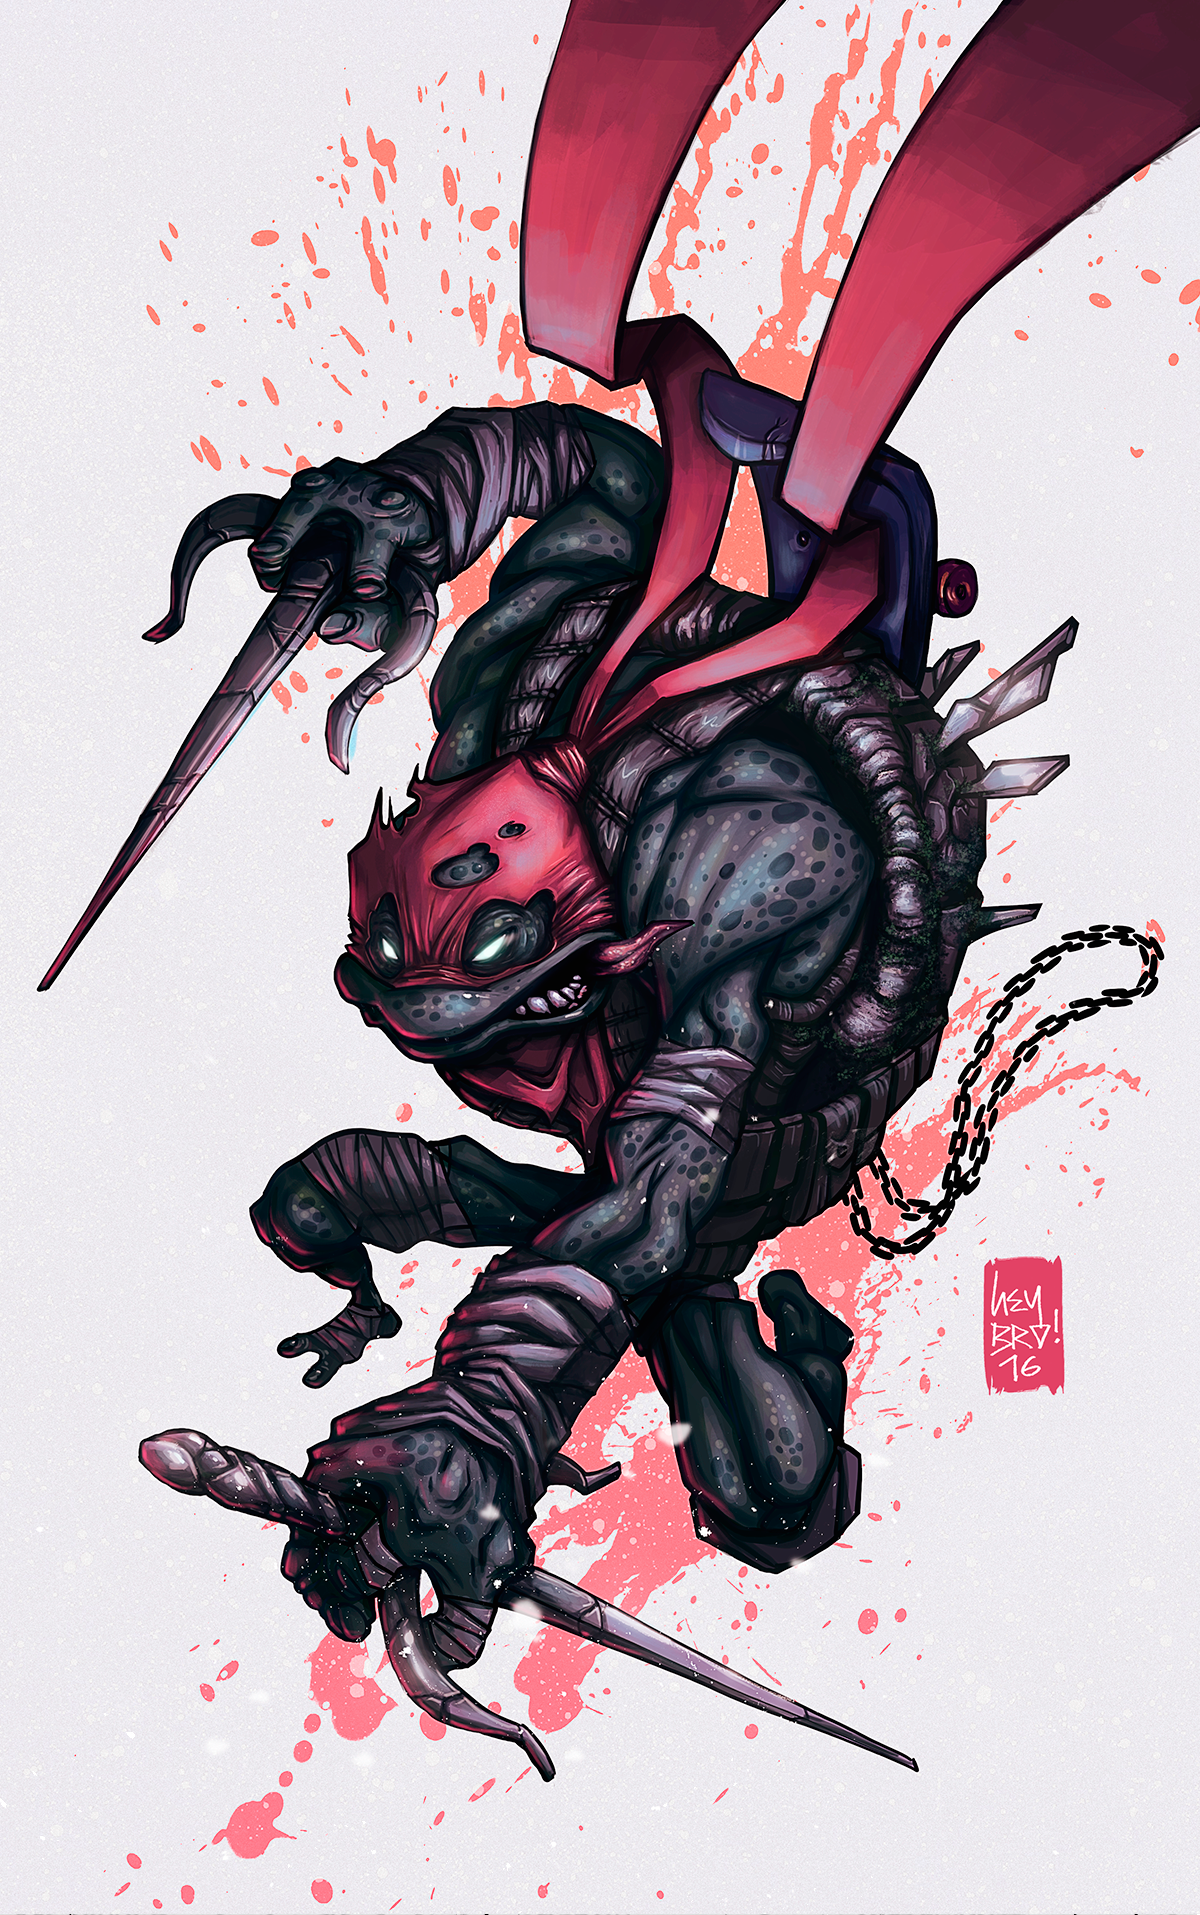 TMNT Ninja Turtles Cover Art Fan Art ninja foreshortening poster tortuga ninja warrior